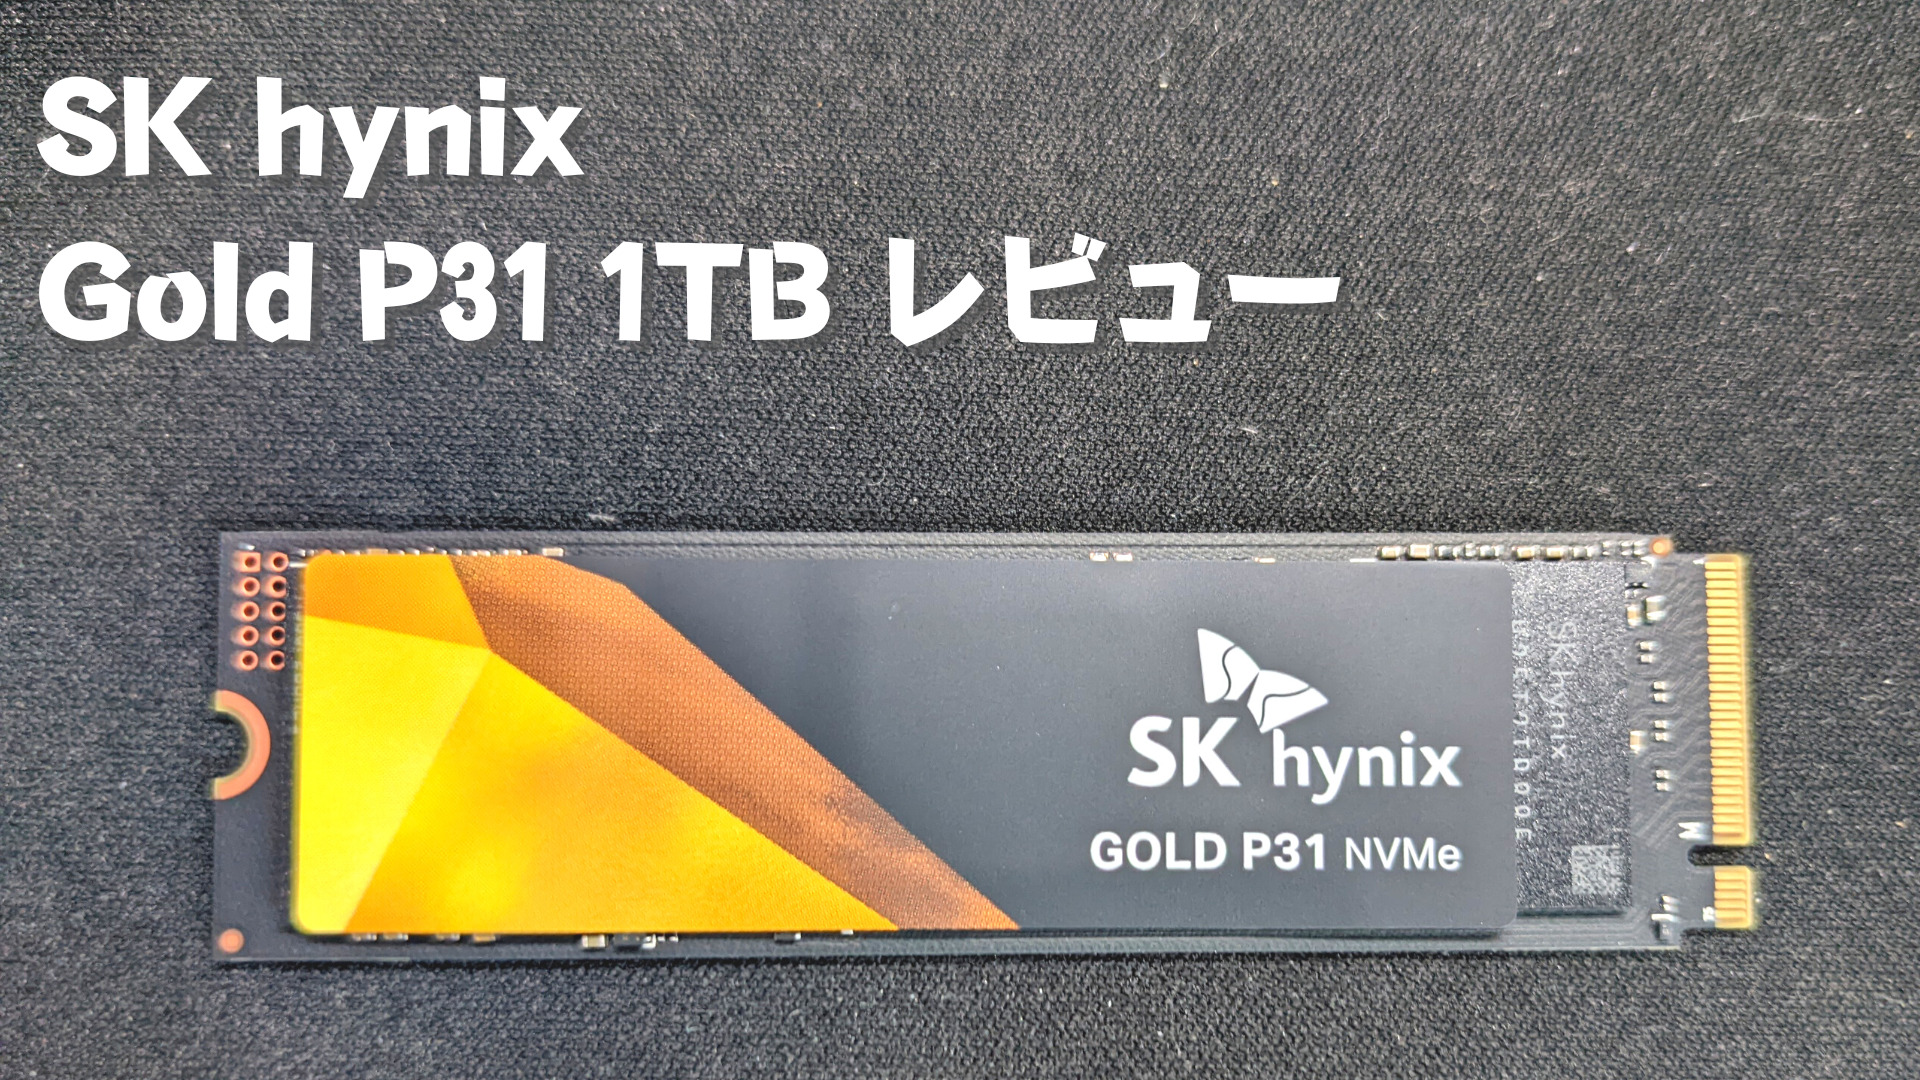 CドライブのSSDをSK hynix Gold P31 1TBに交換した話。 | Doroblog